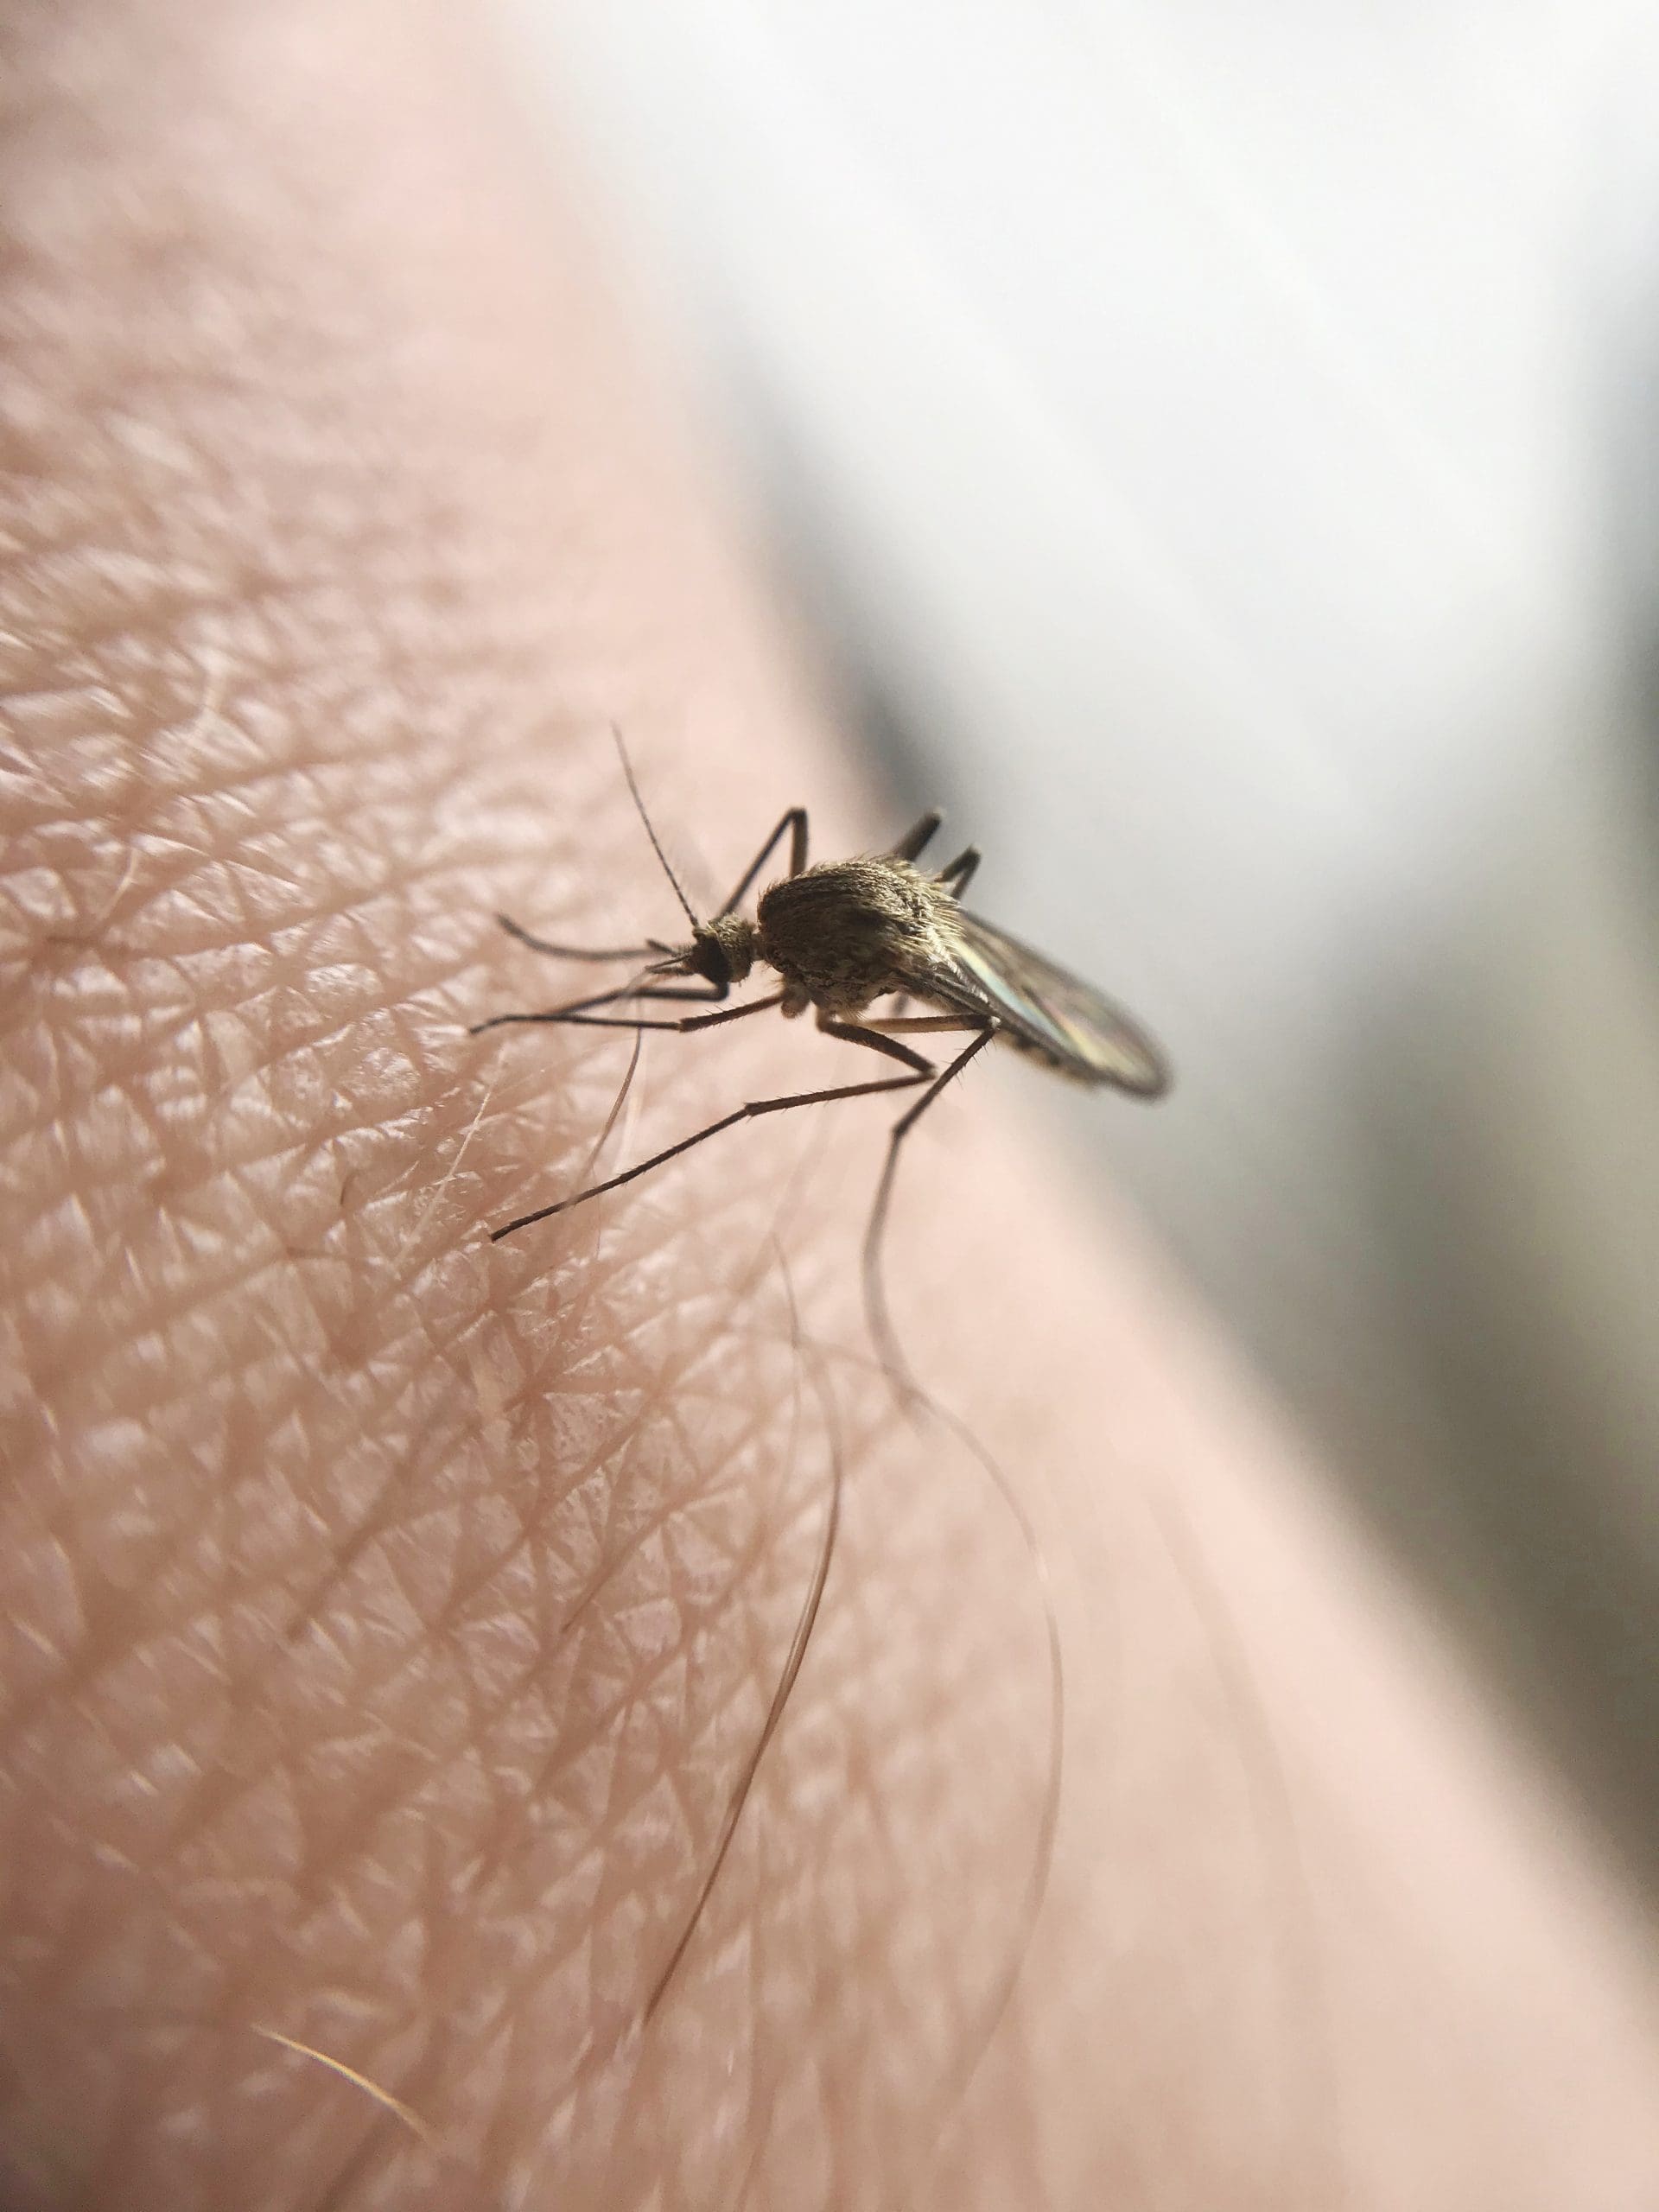 Mosquito control in Coventry, RI